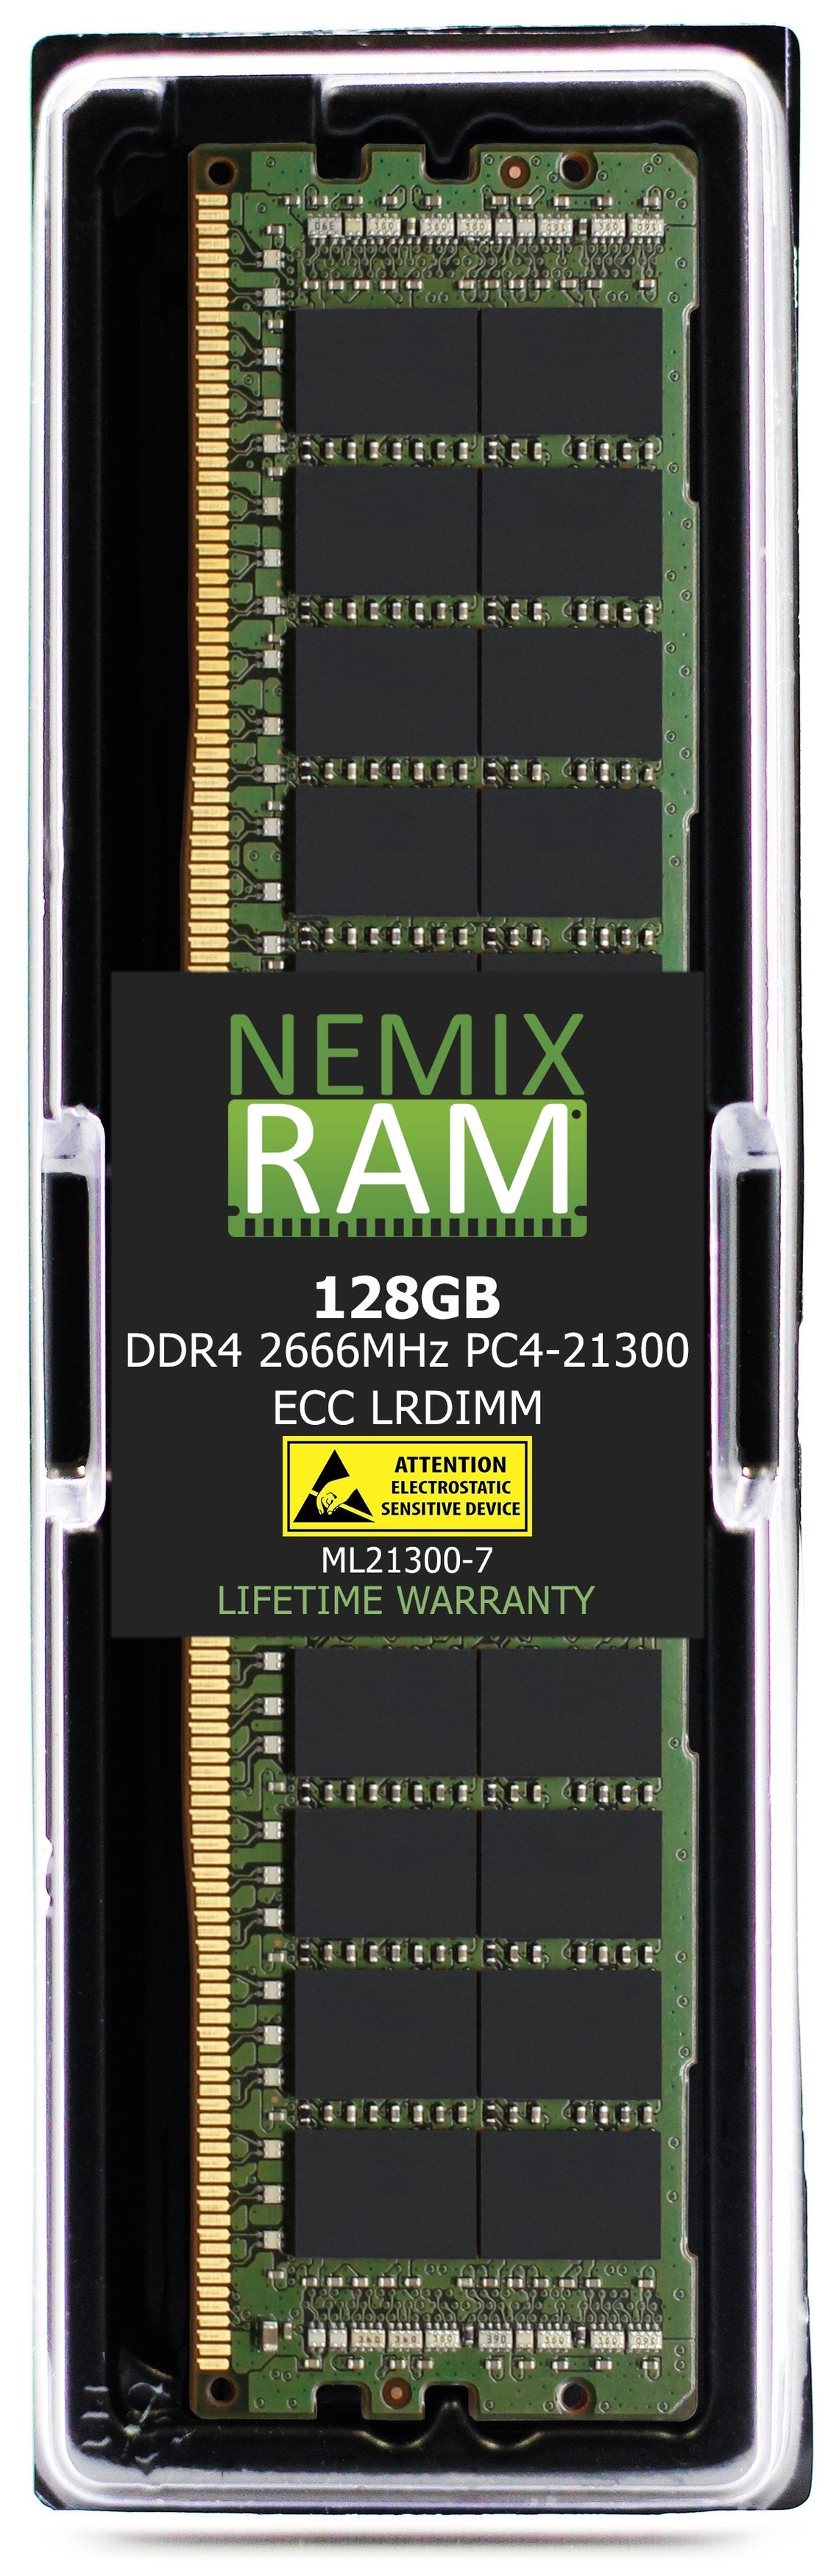 128GB DDR4 2666MHZ PC4-21300 LRDIMM Compatible with Supermicro MEM-DR412L-CL02-LR26